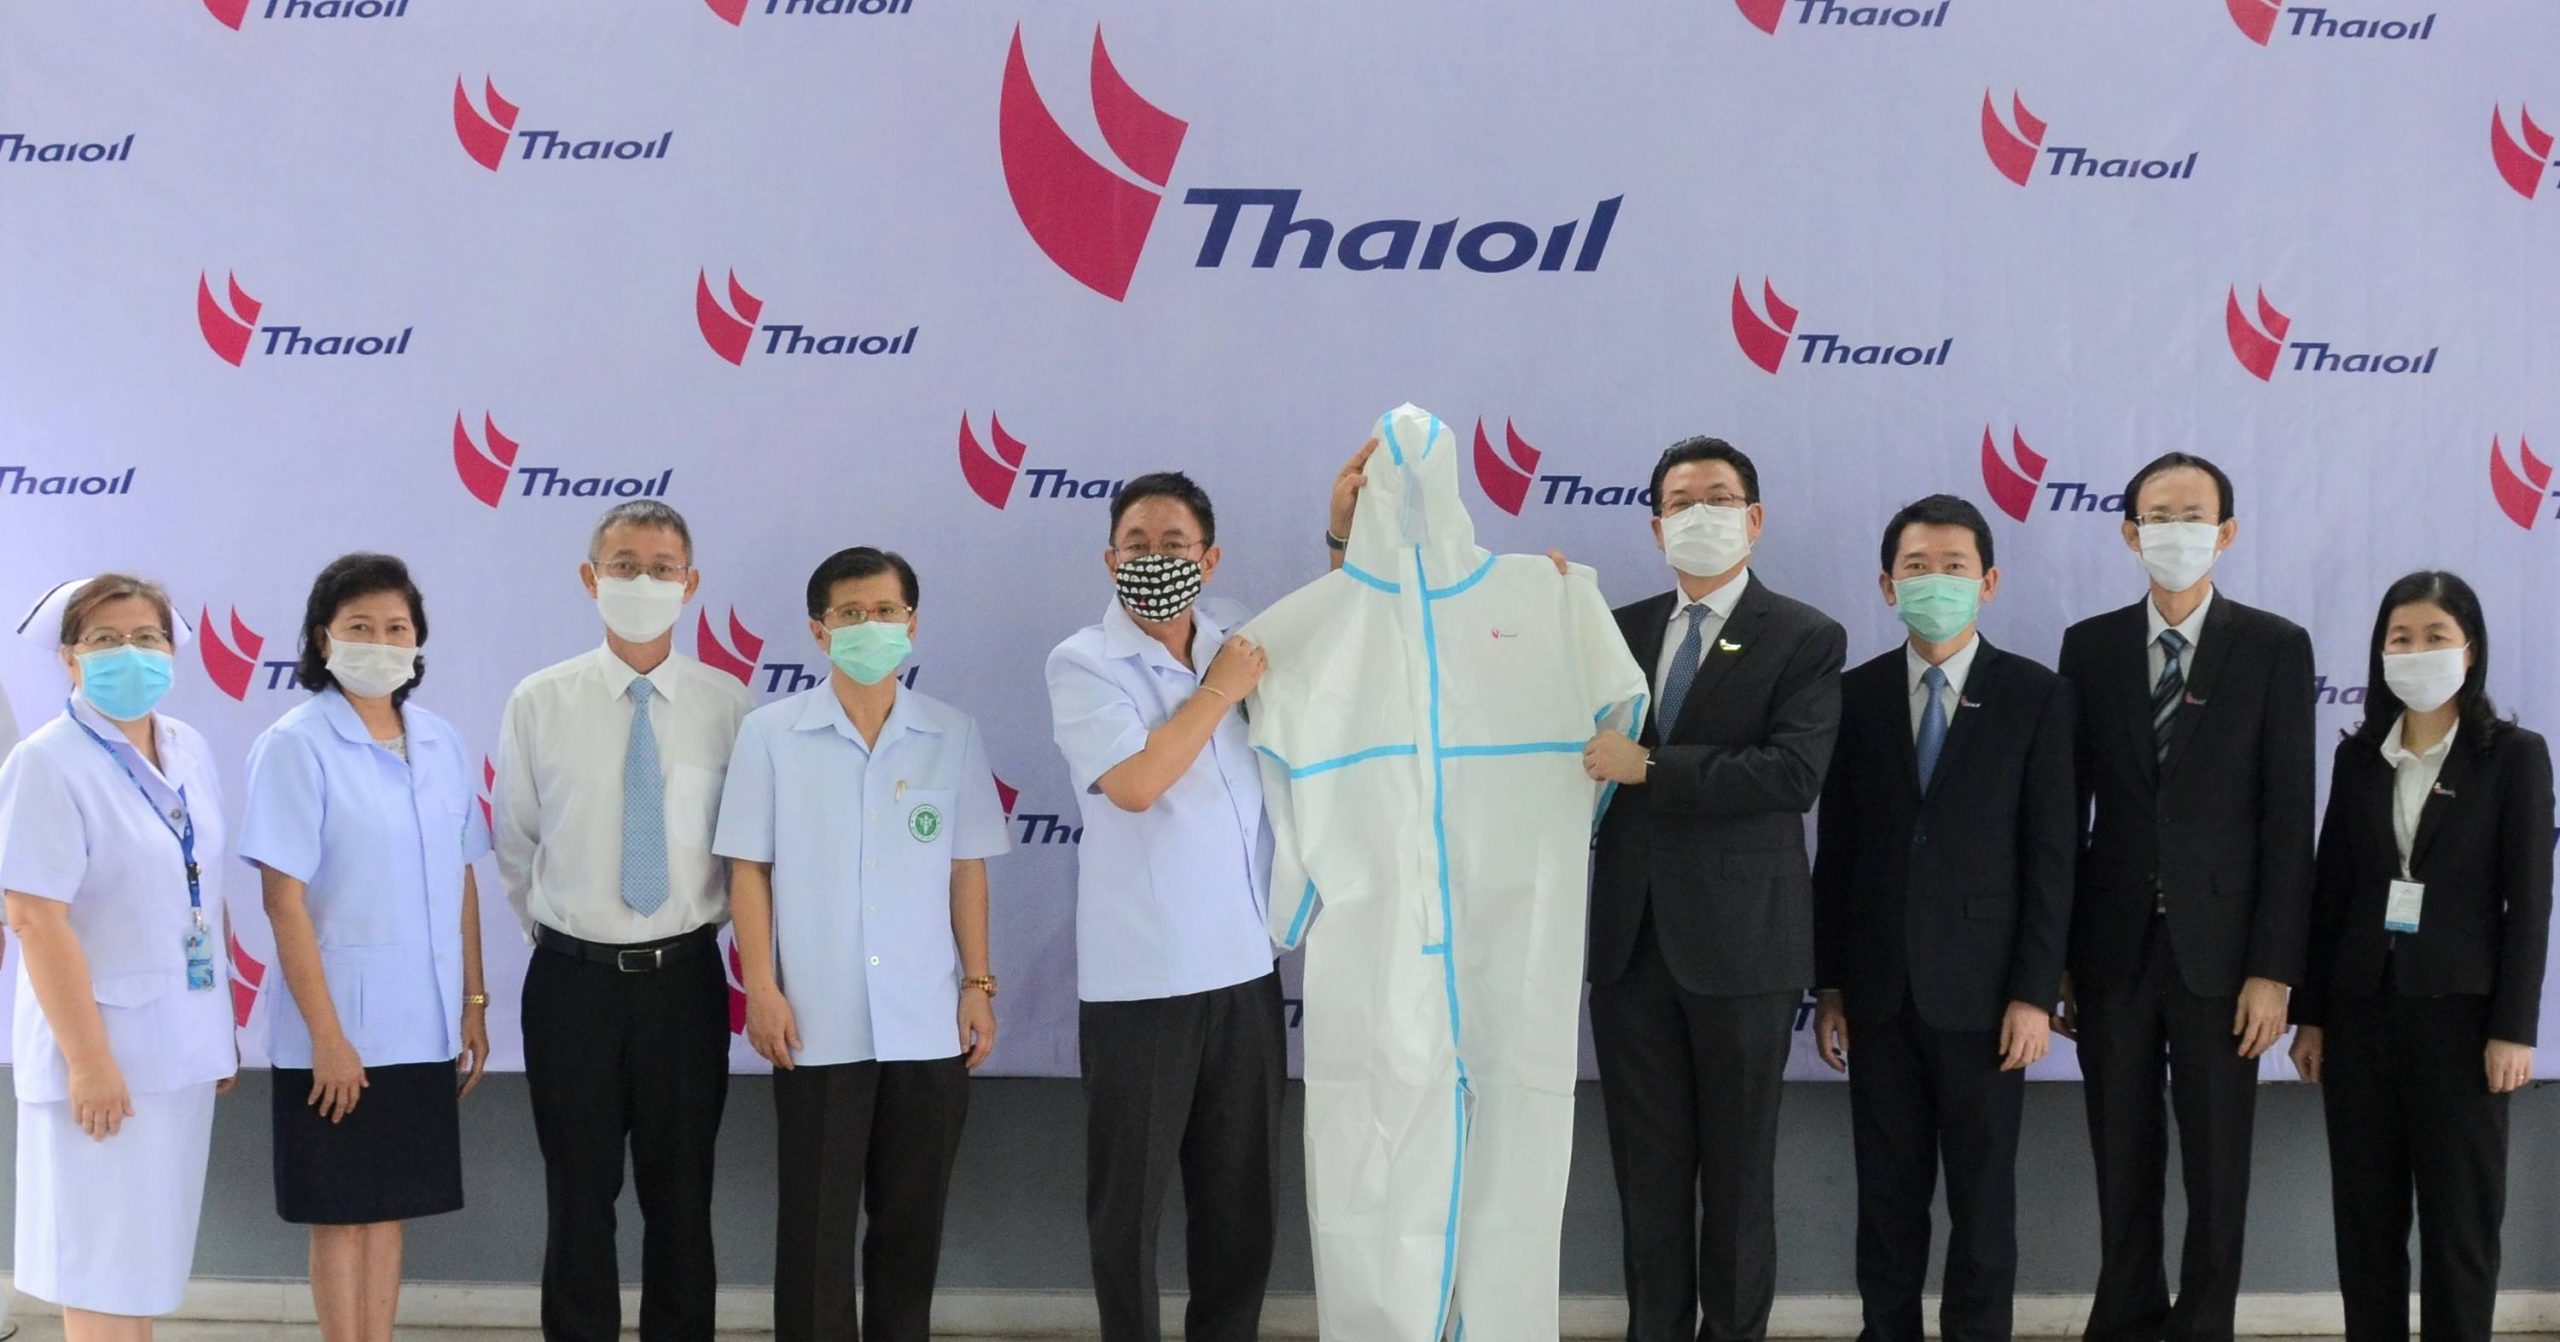 กลุ่มไทยออยล์เดินหน้าปกป้องบุคลากรทางการแพทย์ ส่งมอบชุดคลุมป้องกันการติดเชื้อ ให้กับโรงพยาบาล ในพื้นที่ จ.ชลบุรี มูลค่า 5,100,000